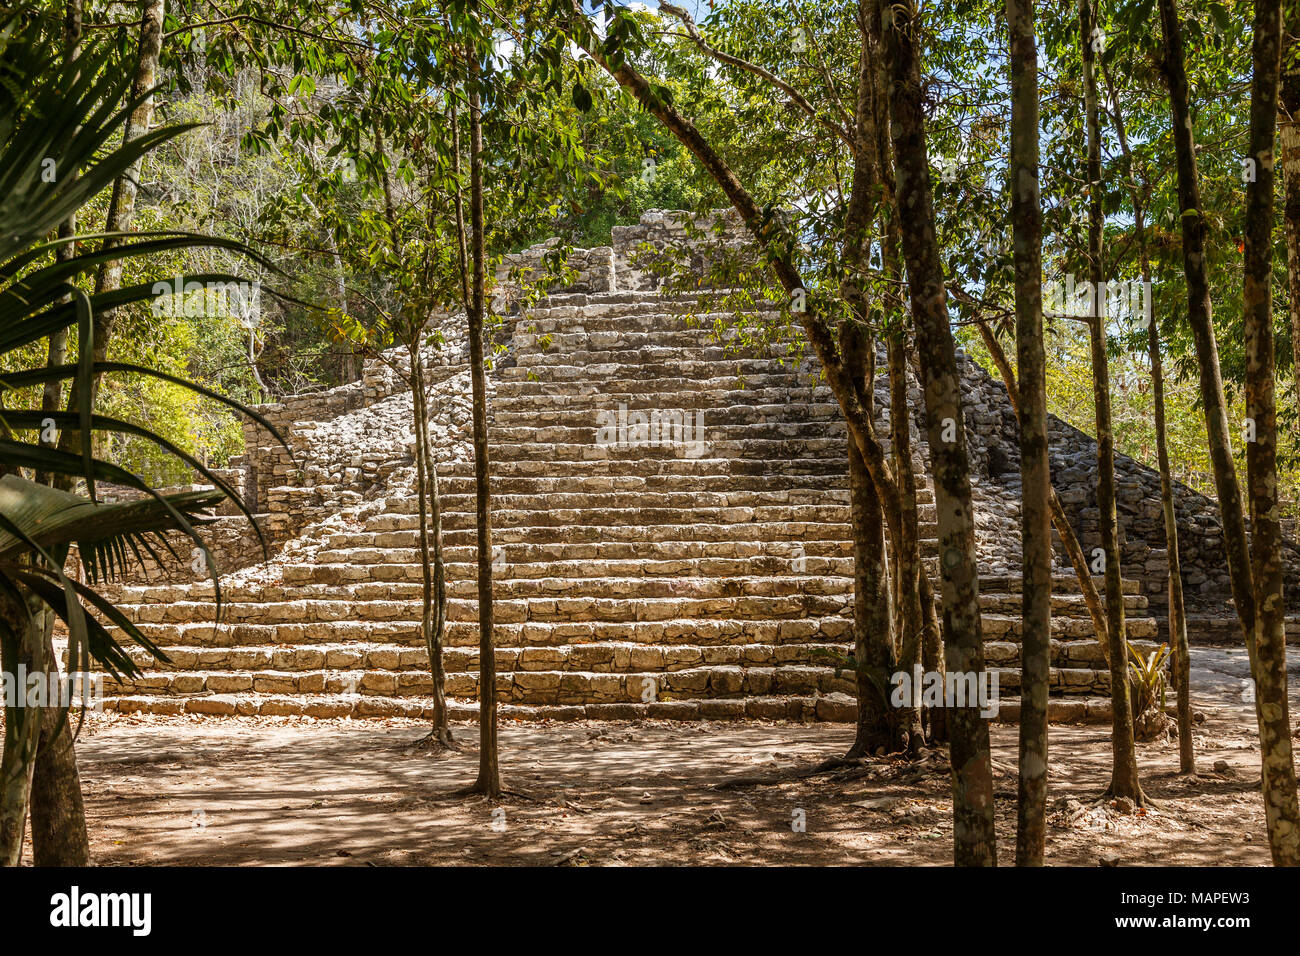 Ancienne petite pyramide d'ancienne civilisation maya ville cachée dans la forêt, site archéologique de Coba, Coba, Yucatan, Mexique Banque D'Images